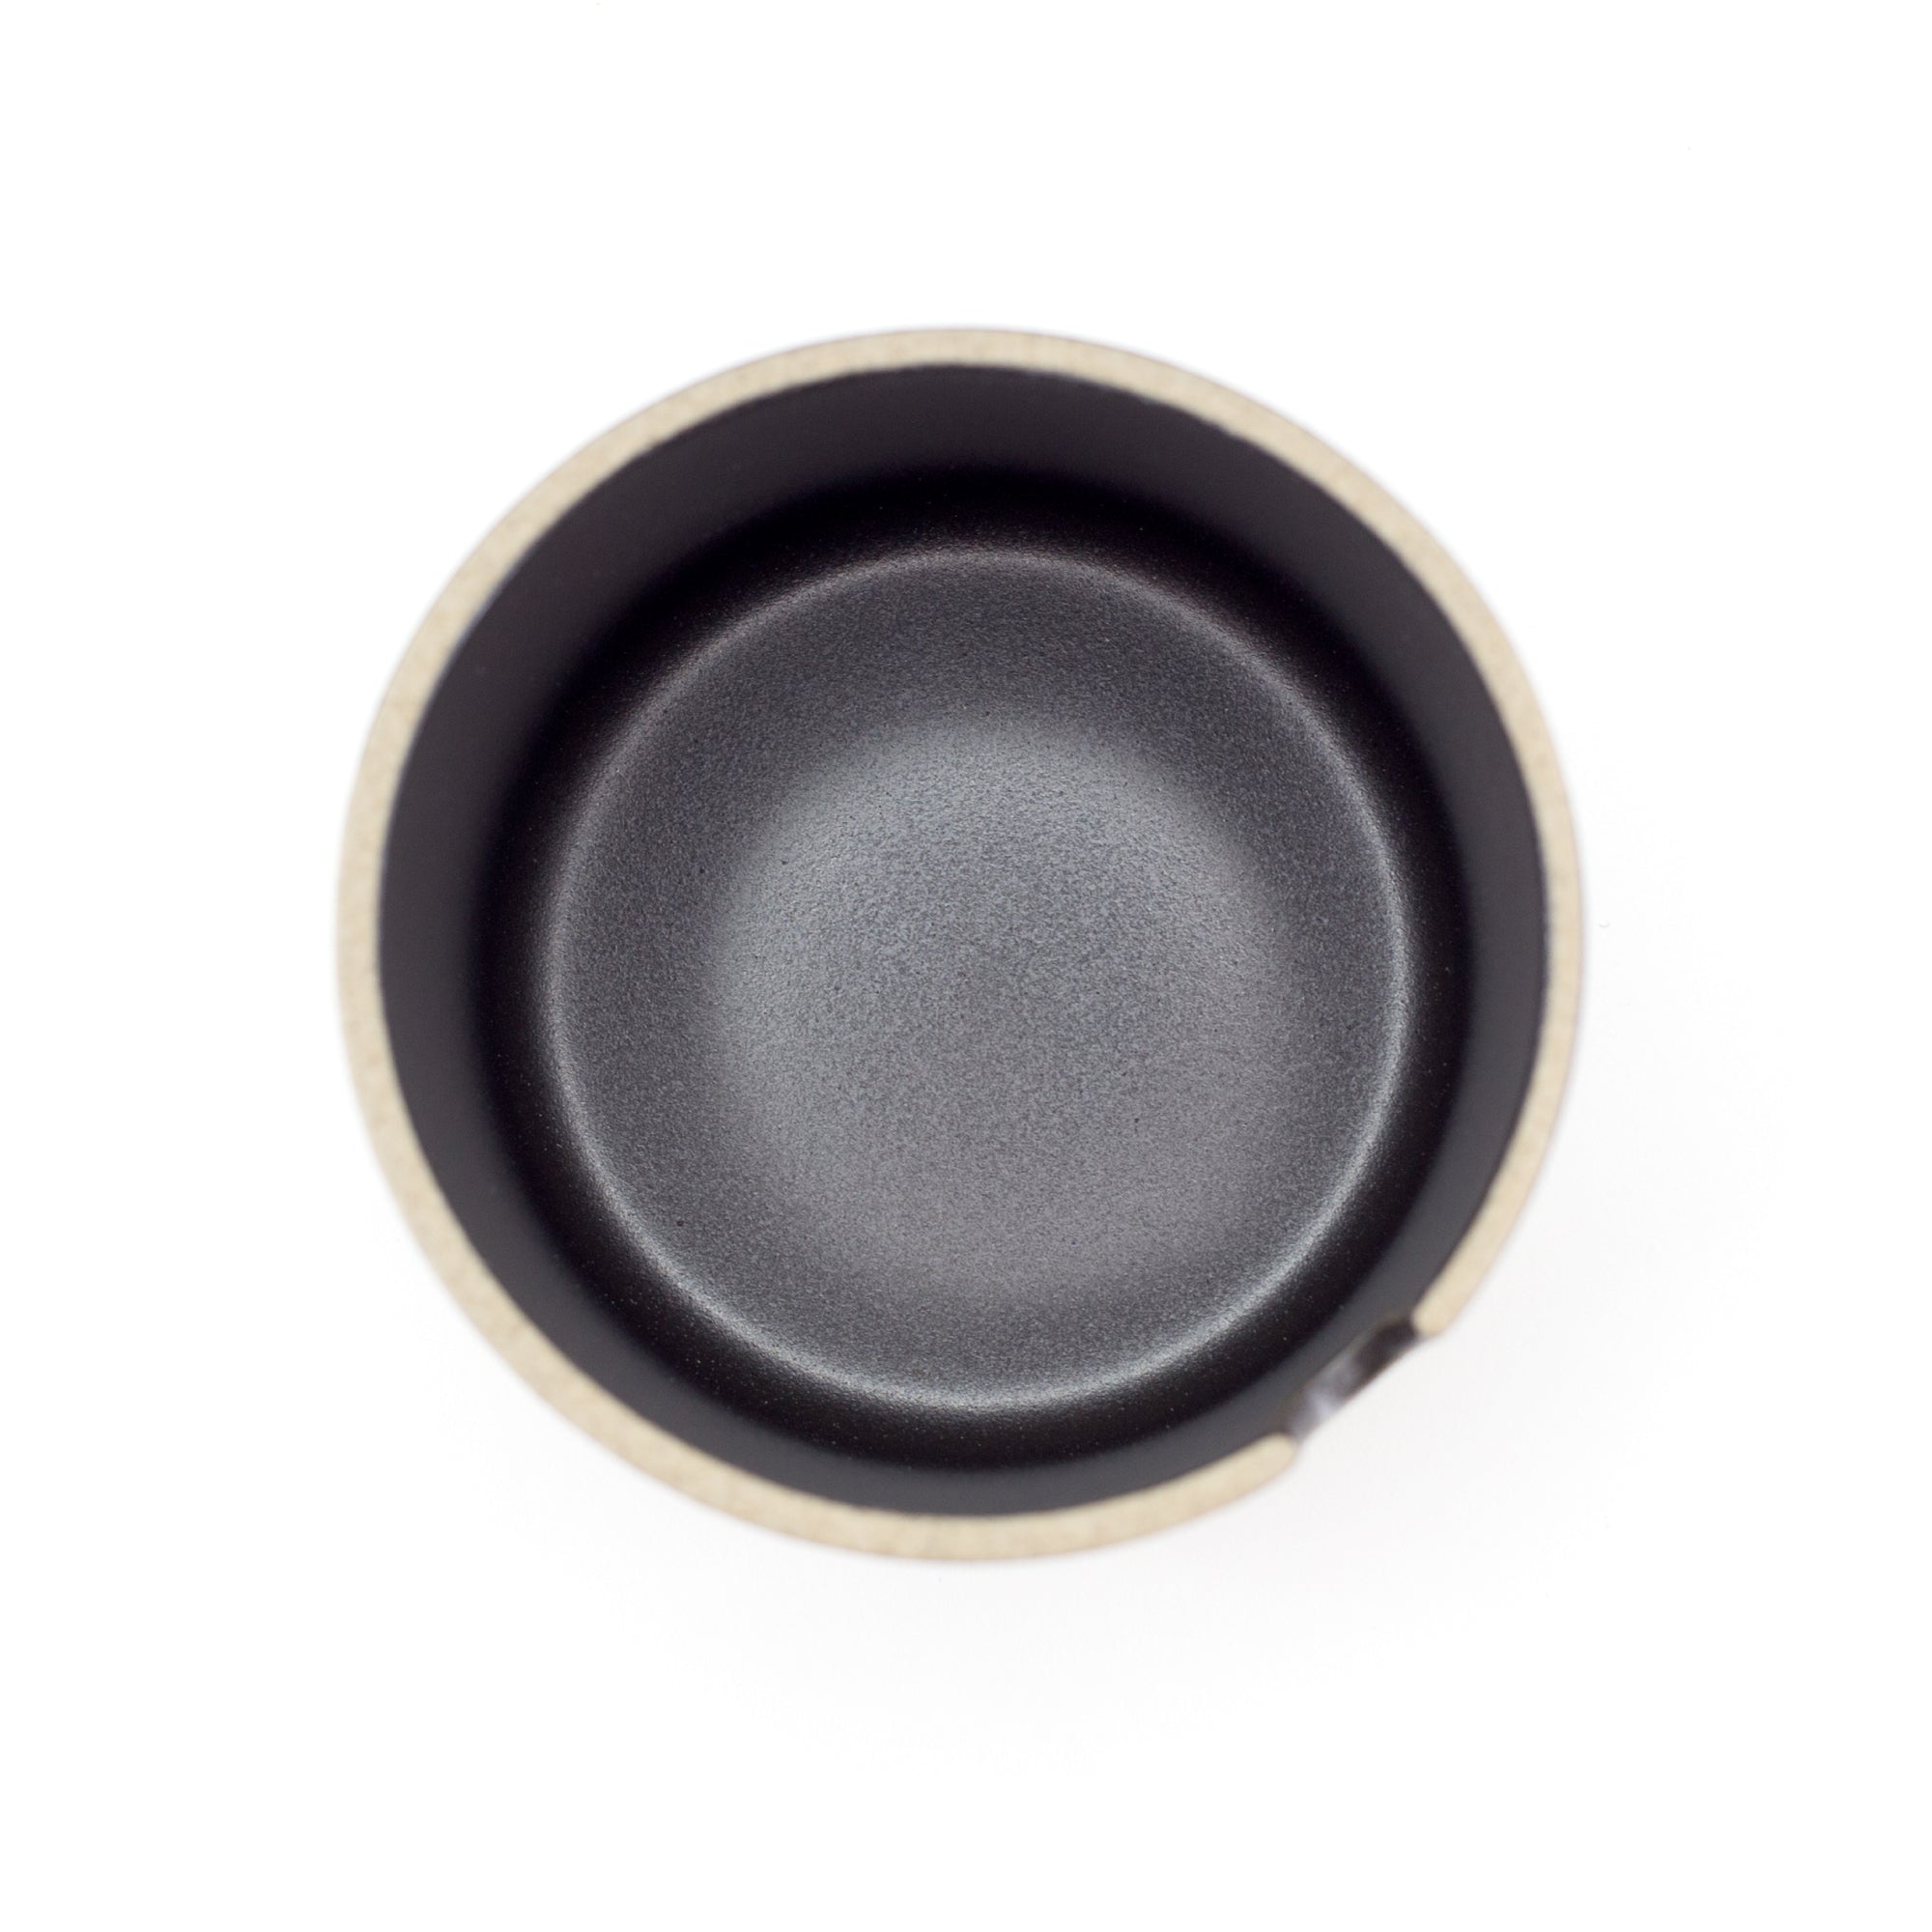 Hasami - Sugar Bowl in Black